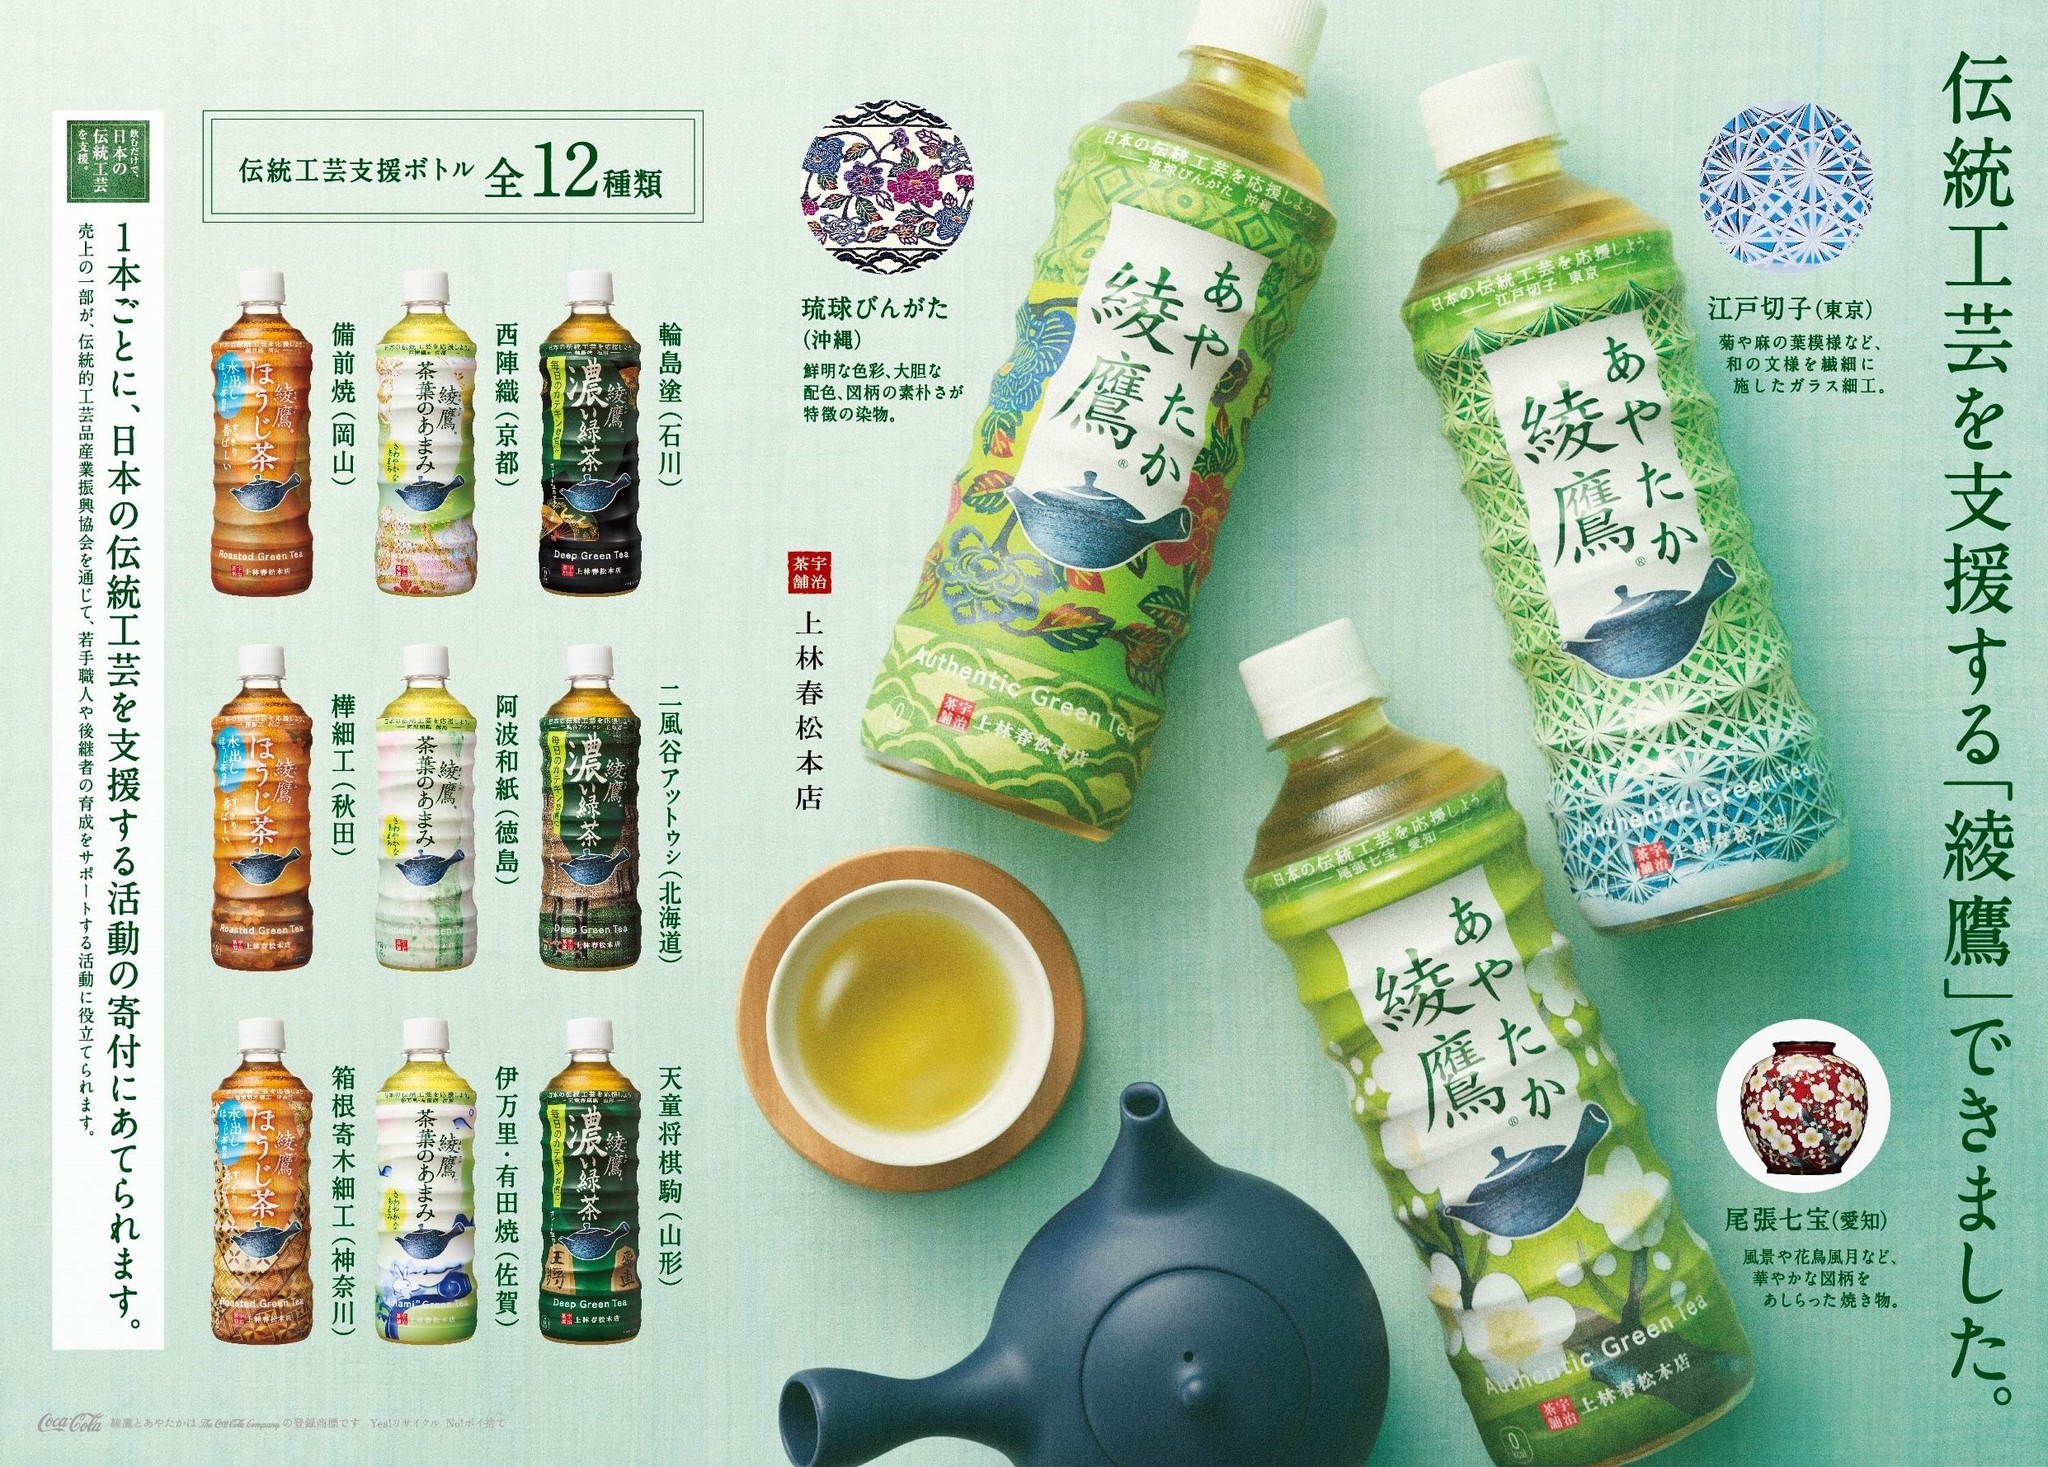 急須でいれたような本格的なお茶の味わいを目指す 綾鷹 日本の伝統工芸を支援する 綾鷹 伝統工芸支援ボトル 2月 15日 月 から 新 Cmが 全国放映開始 日本コカ コーラ株式会社のプレスリリース